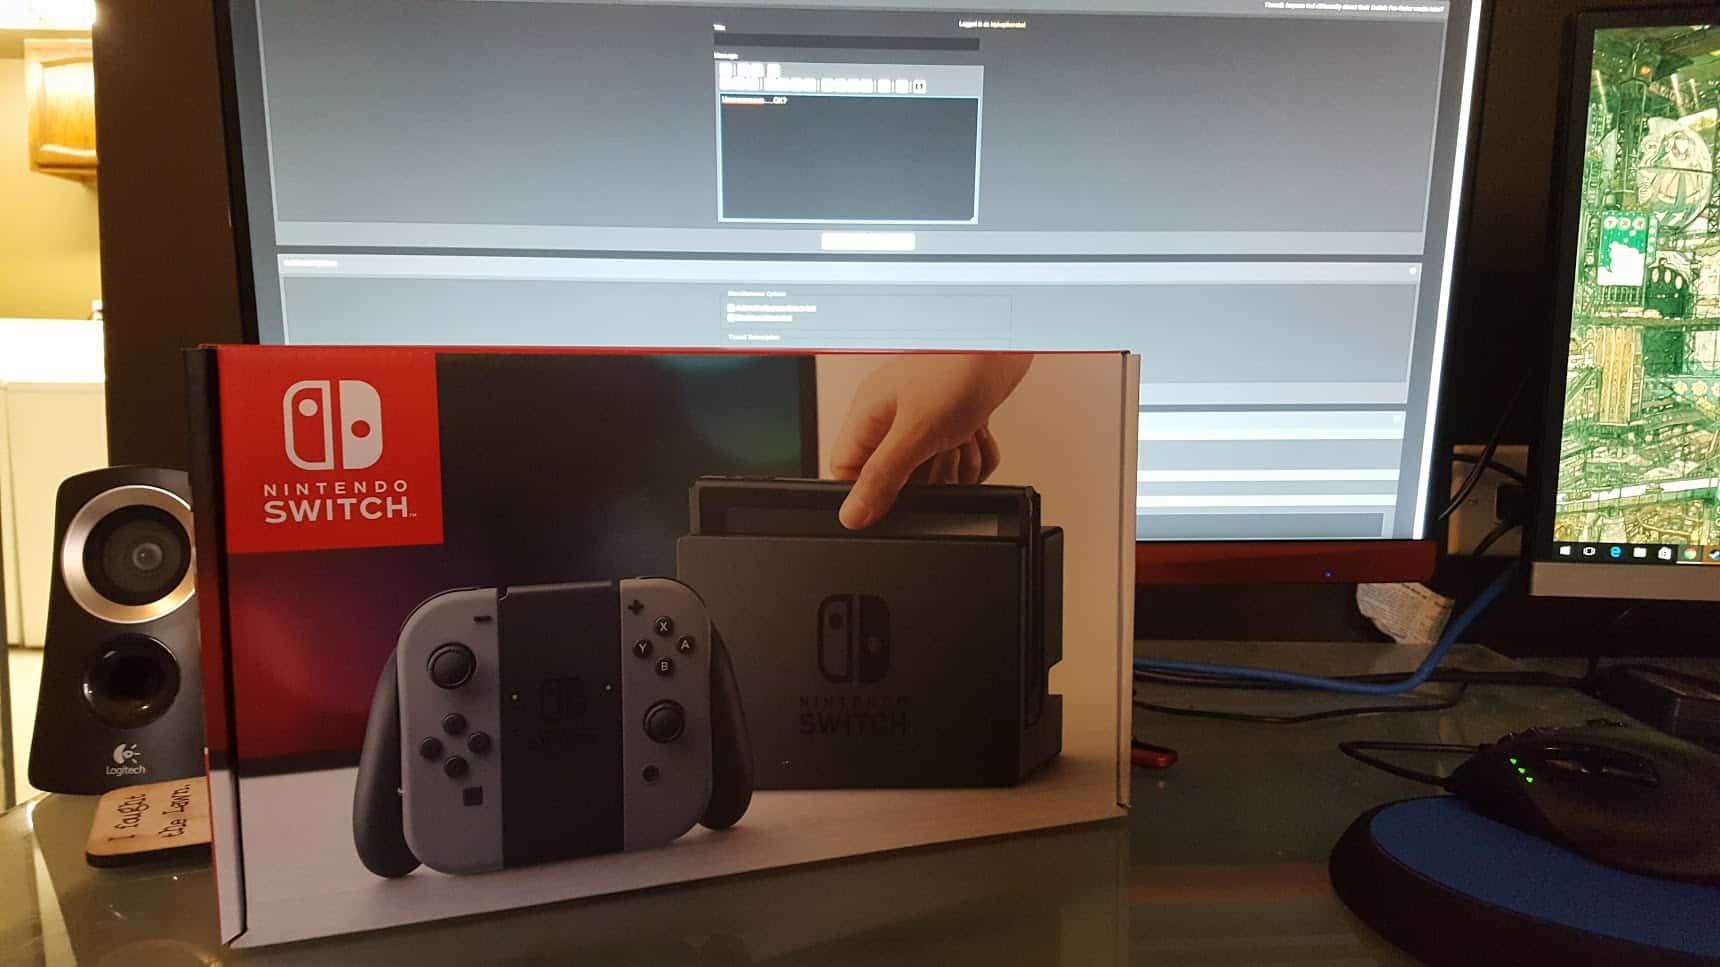 Taken nintendo switch. Распаковка Nintendo Switch. Звуки игровой приставки Нинтендо свитч. Nintendo Switch фото реальных покупателей. Первый запуск Nintendo Switch.